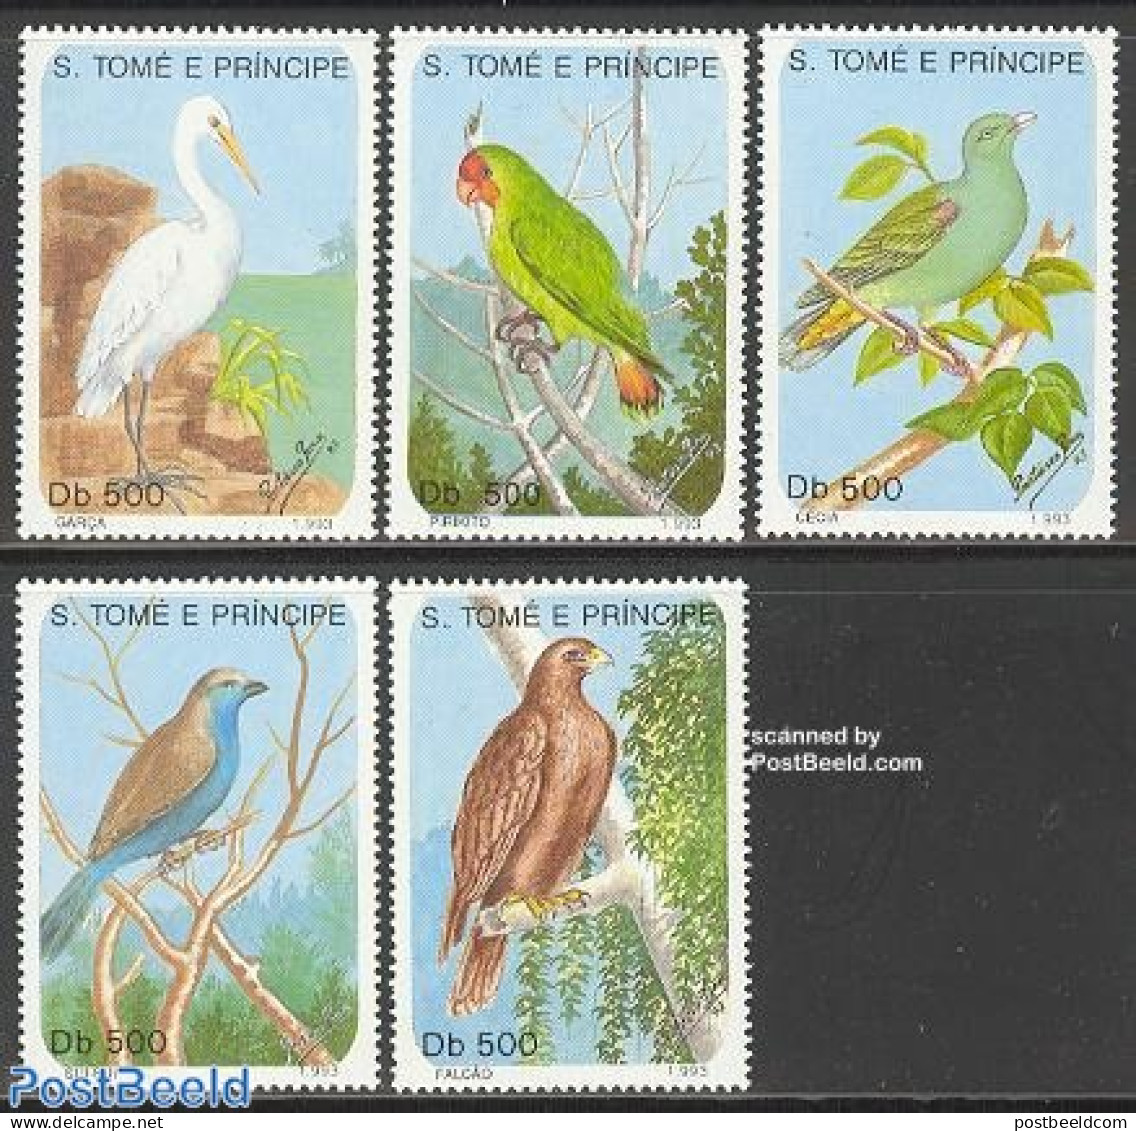 Sao Tome/Principe 1993 Birds 5v, Mint NH, Nature - Birds - Parrots - Sao Tome And Principe